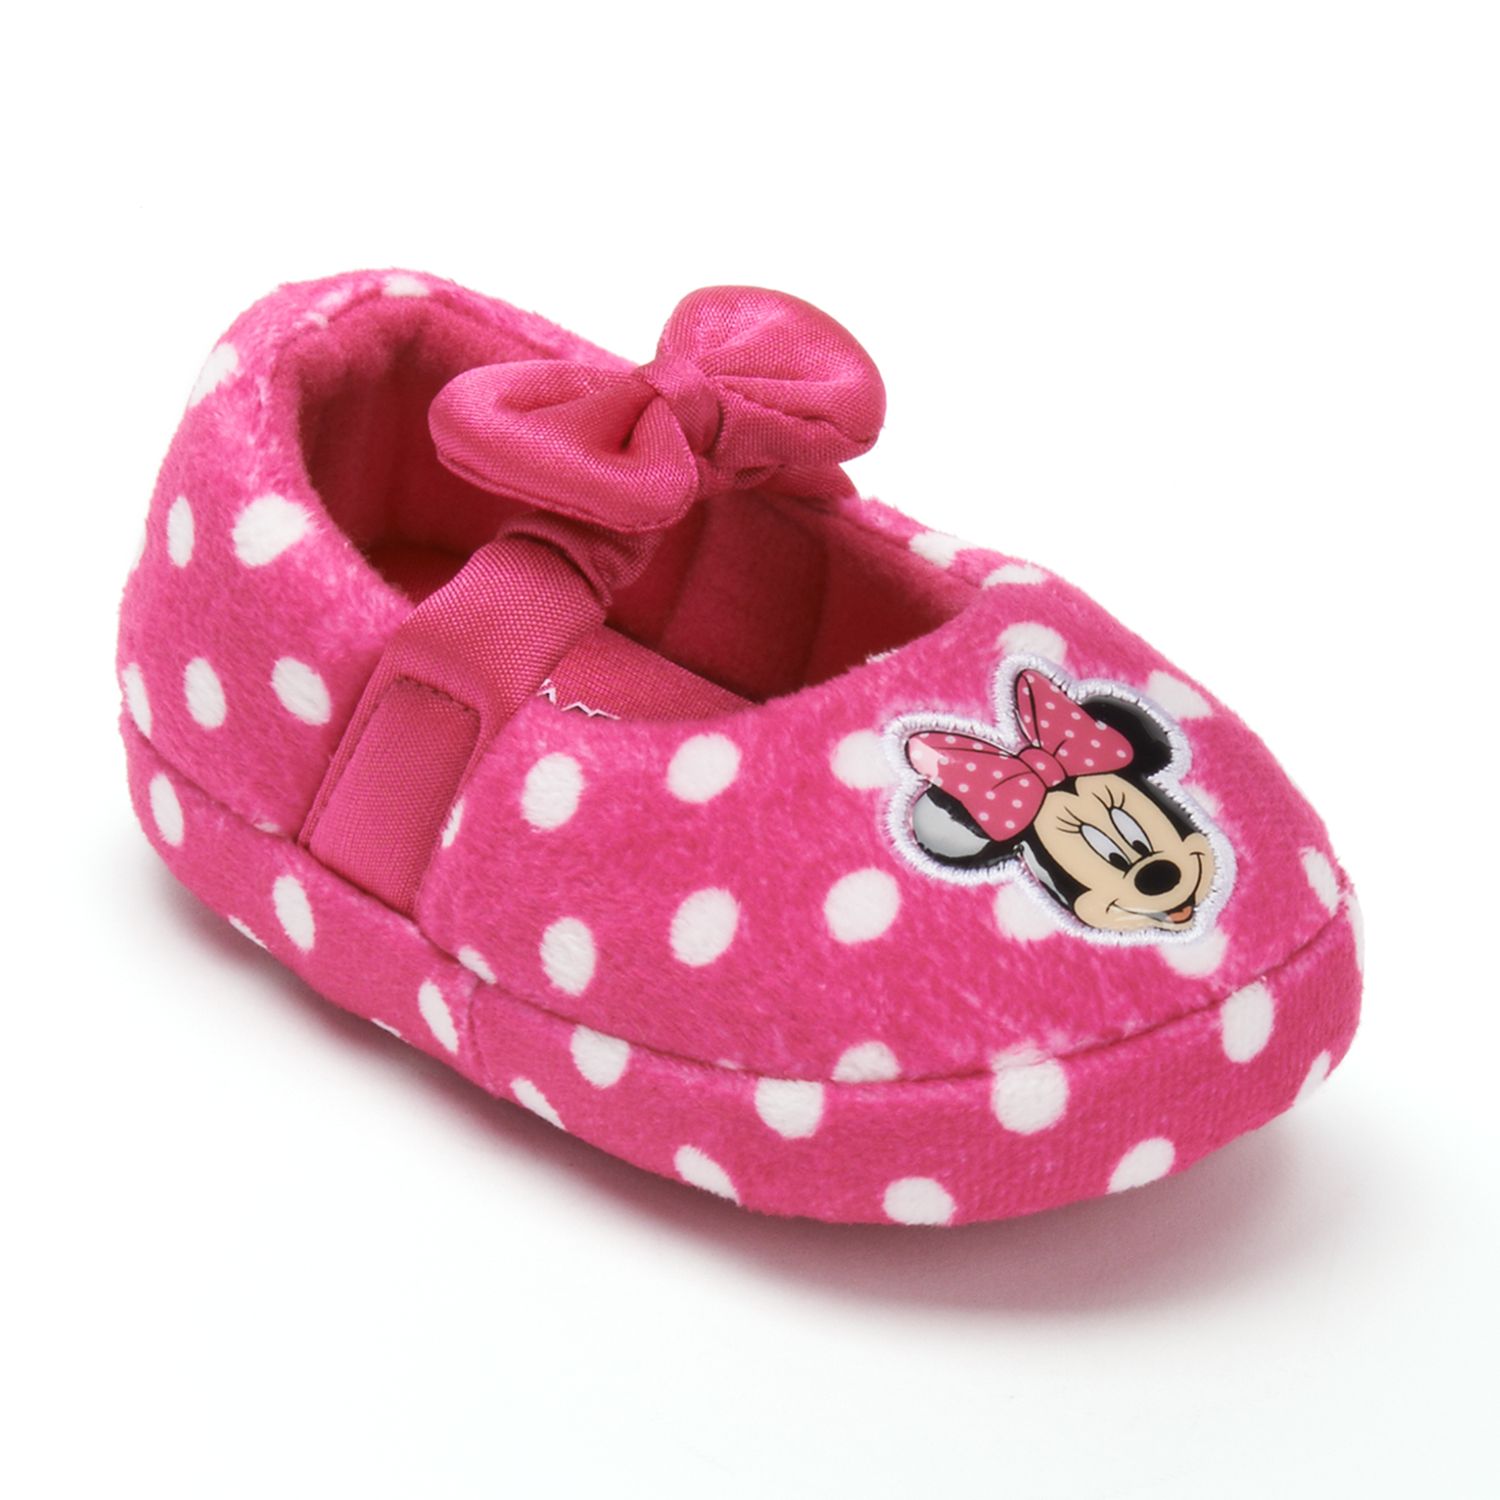 kohls childrens slippers